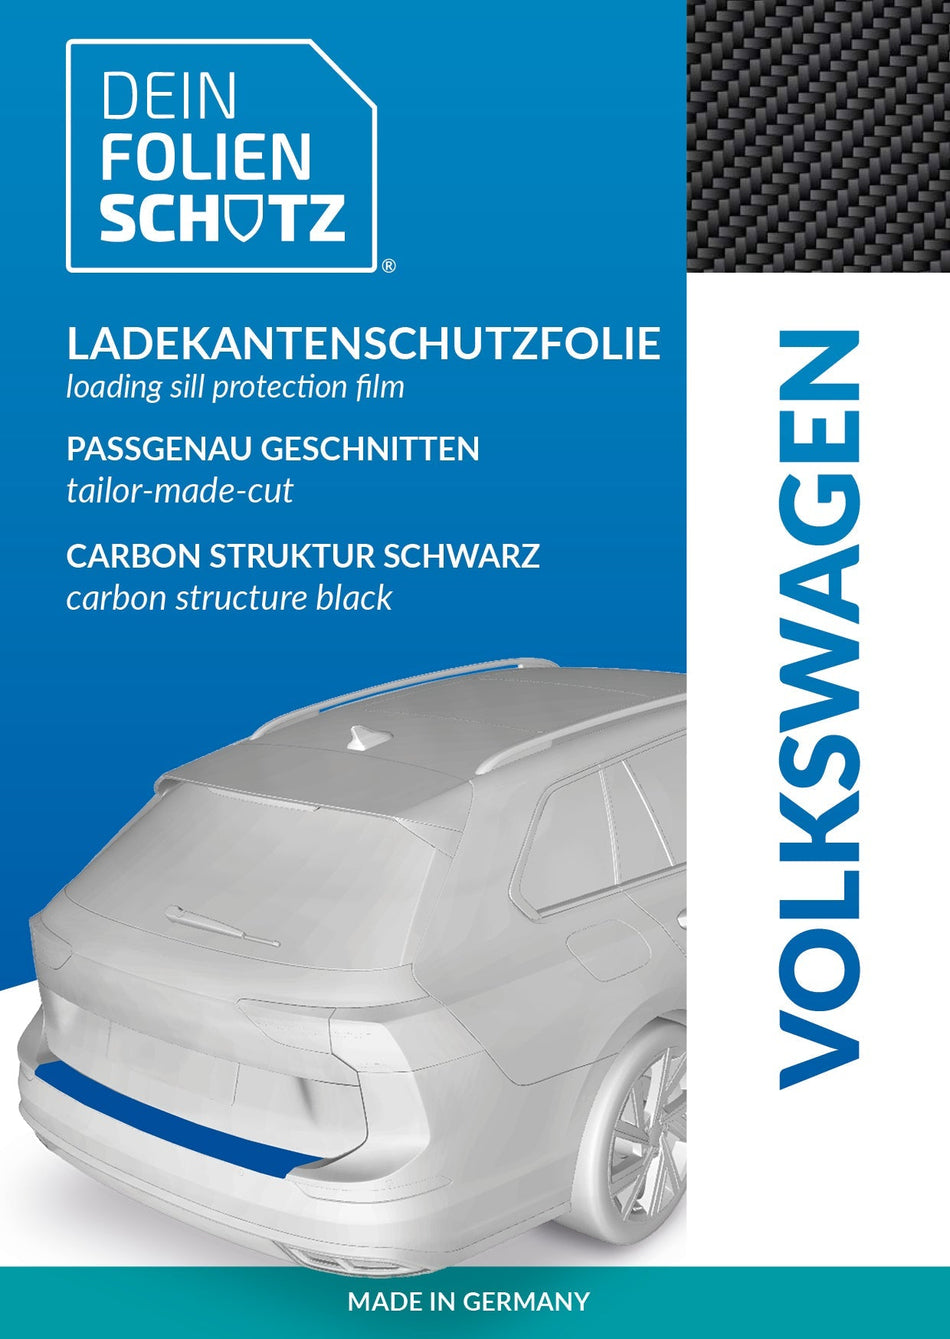 DEIN FOLIENSCHUTZ Ladekantenschutzfolie Volkswagen up! Carbon Struktur schwarz